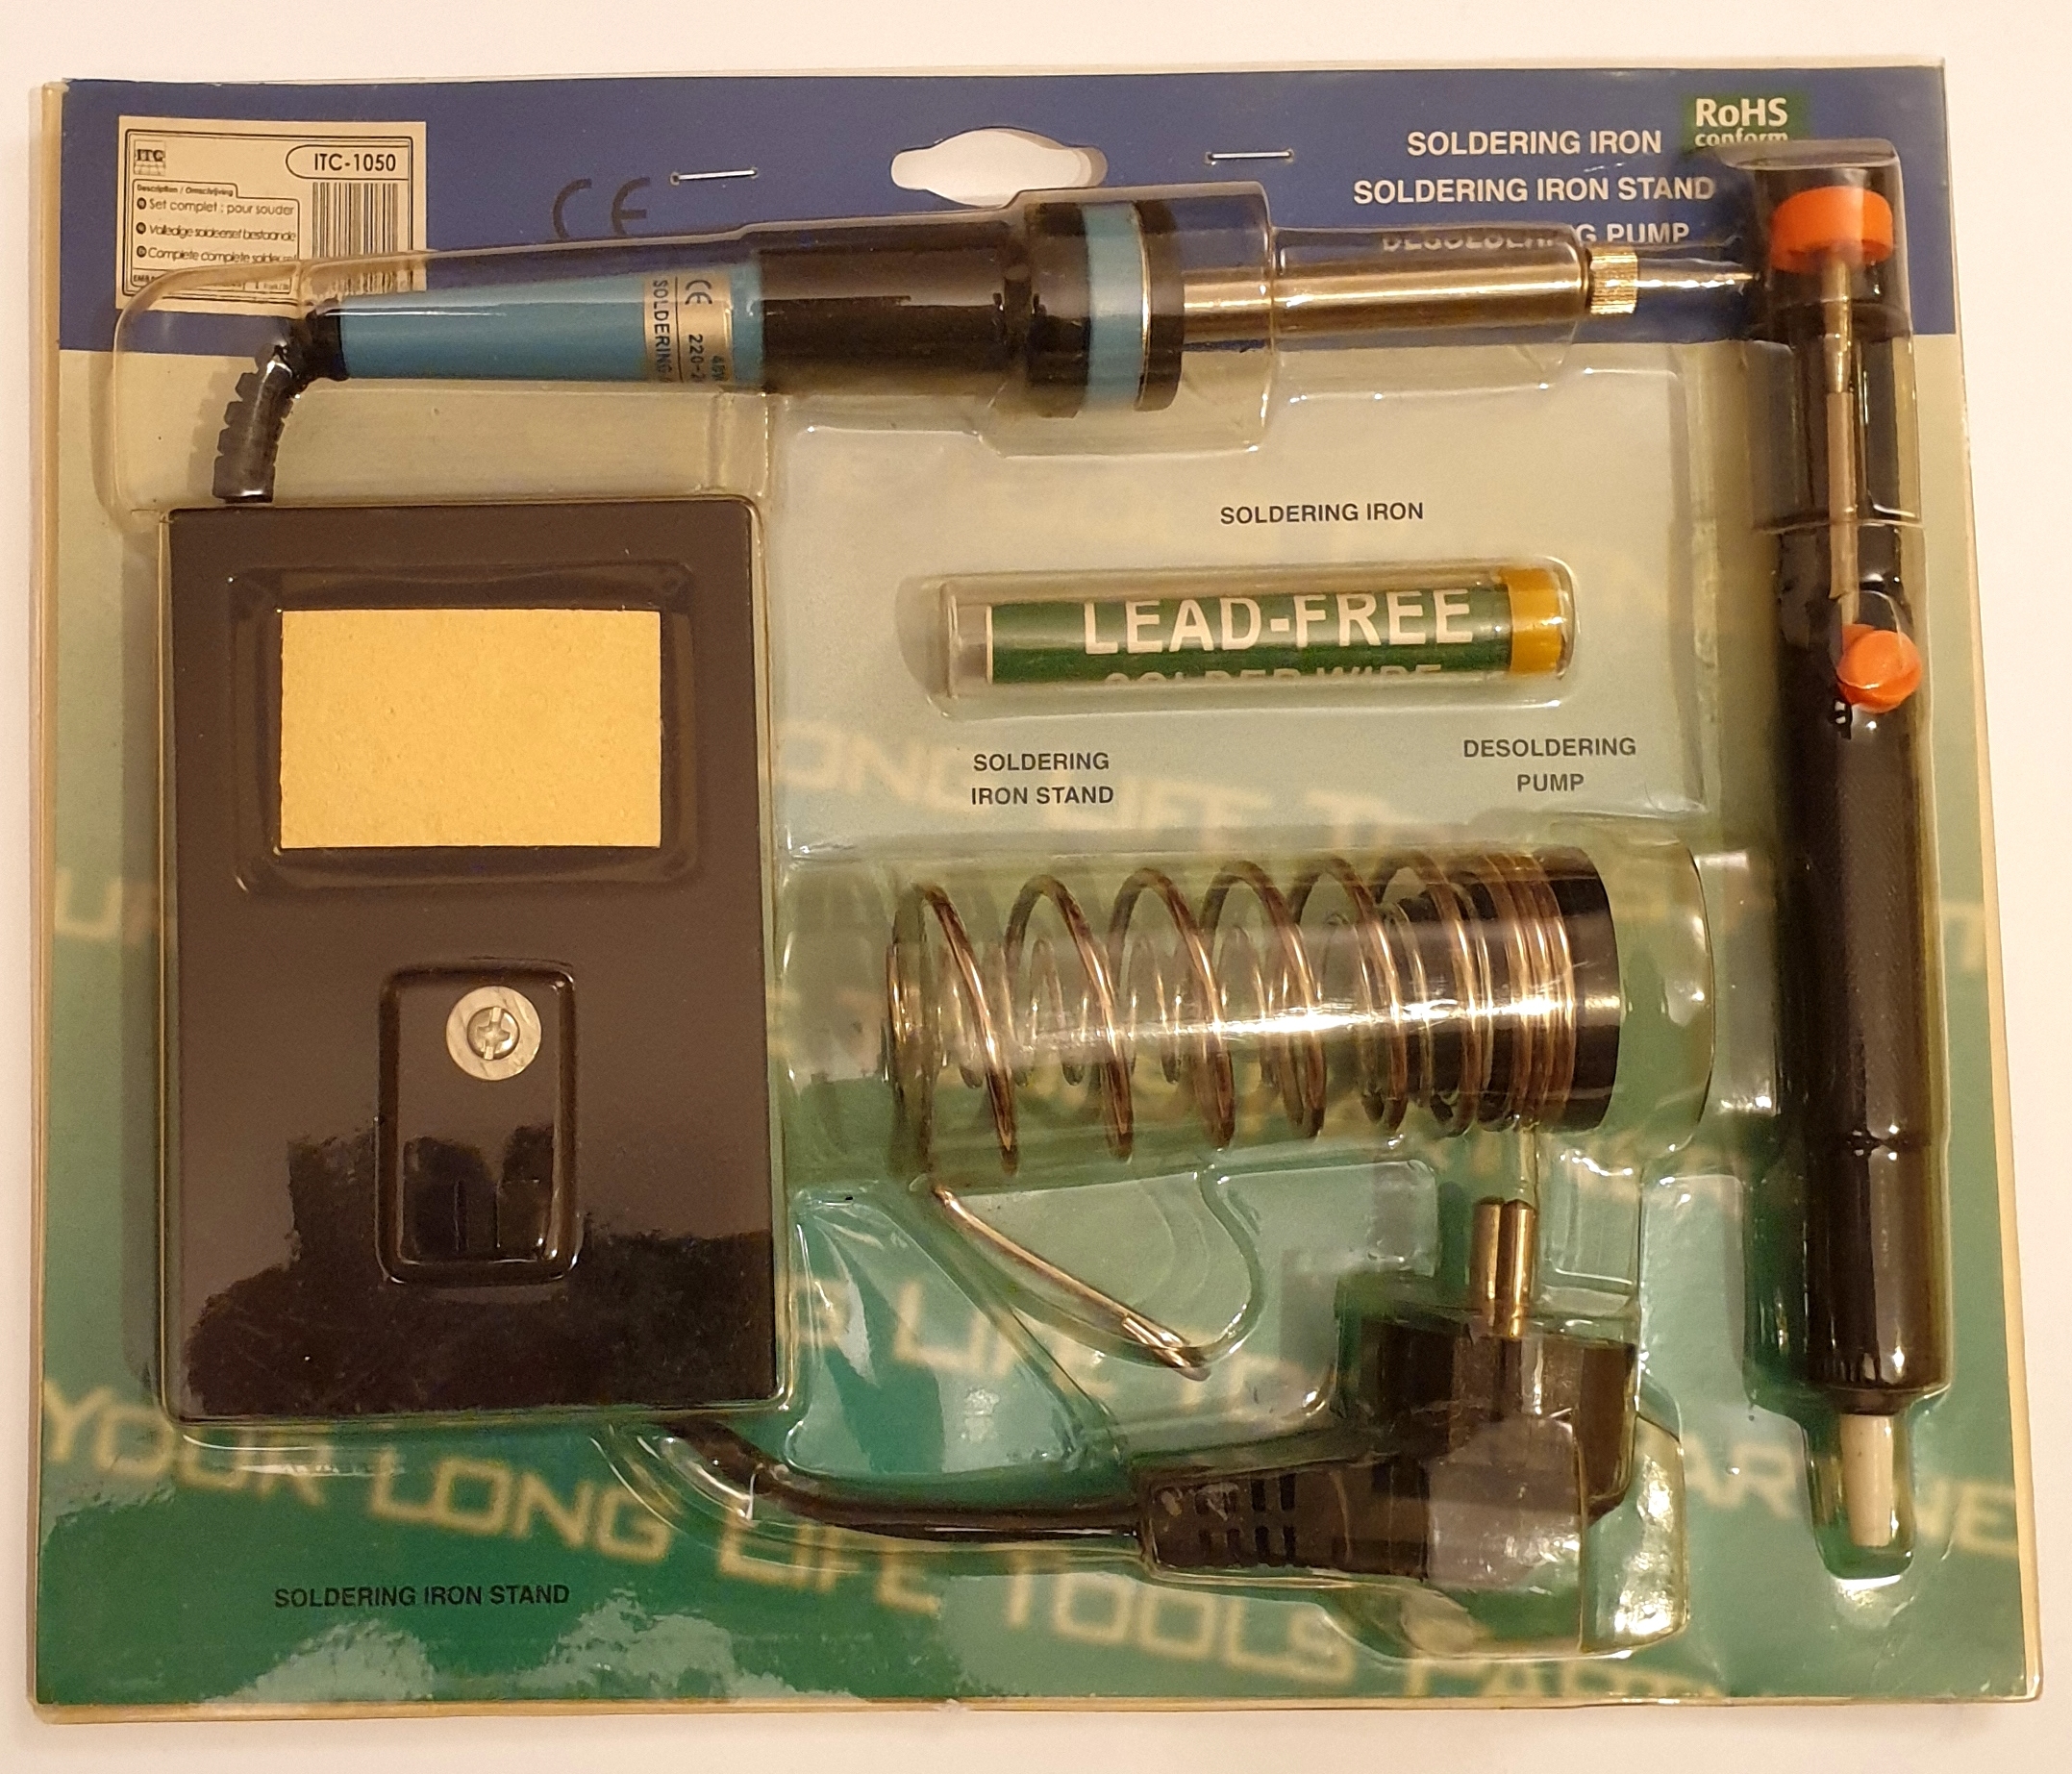 Bysameyee Kit de fer à souder outil de soudage à température réglable 60W pour lélectronique avec pompe à dessouder Support de fer à souder Tournevis Pince à fil en étain Sac de rangement 